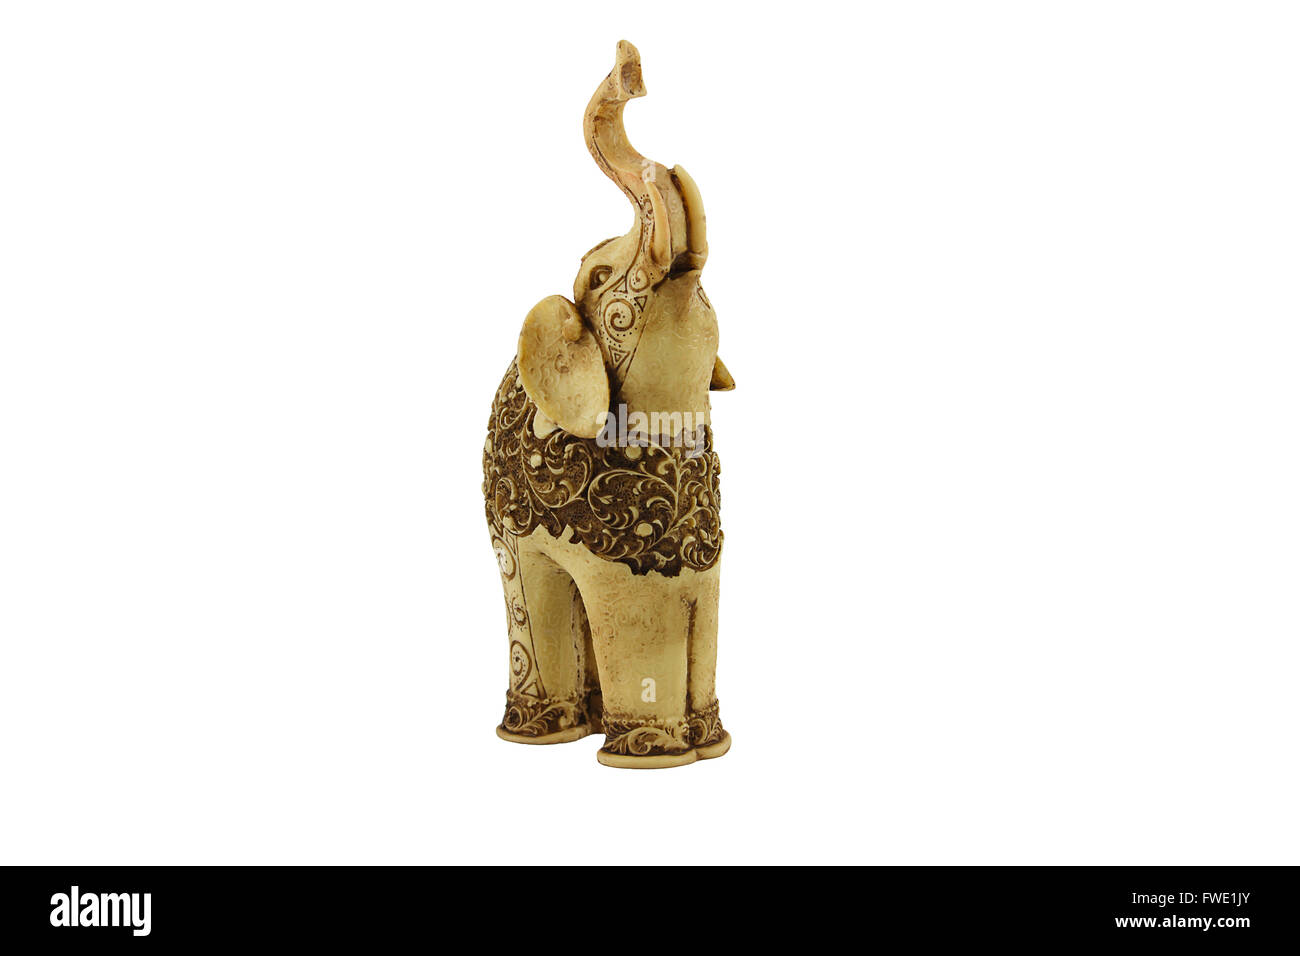 Statuette d'éléphant indien sculpté avec des motifs très belle. Faite de l'ivoire au Sri Lanka. Isolé sur blanc. Vie avant Banque D'Images